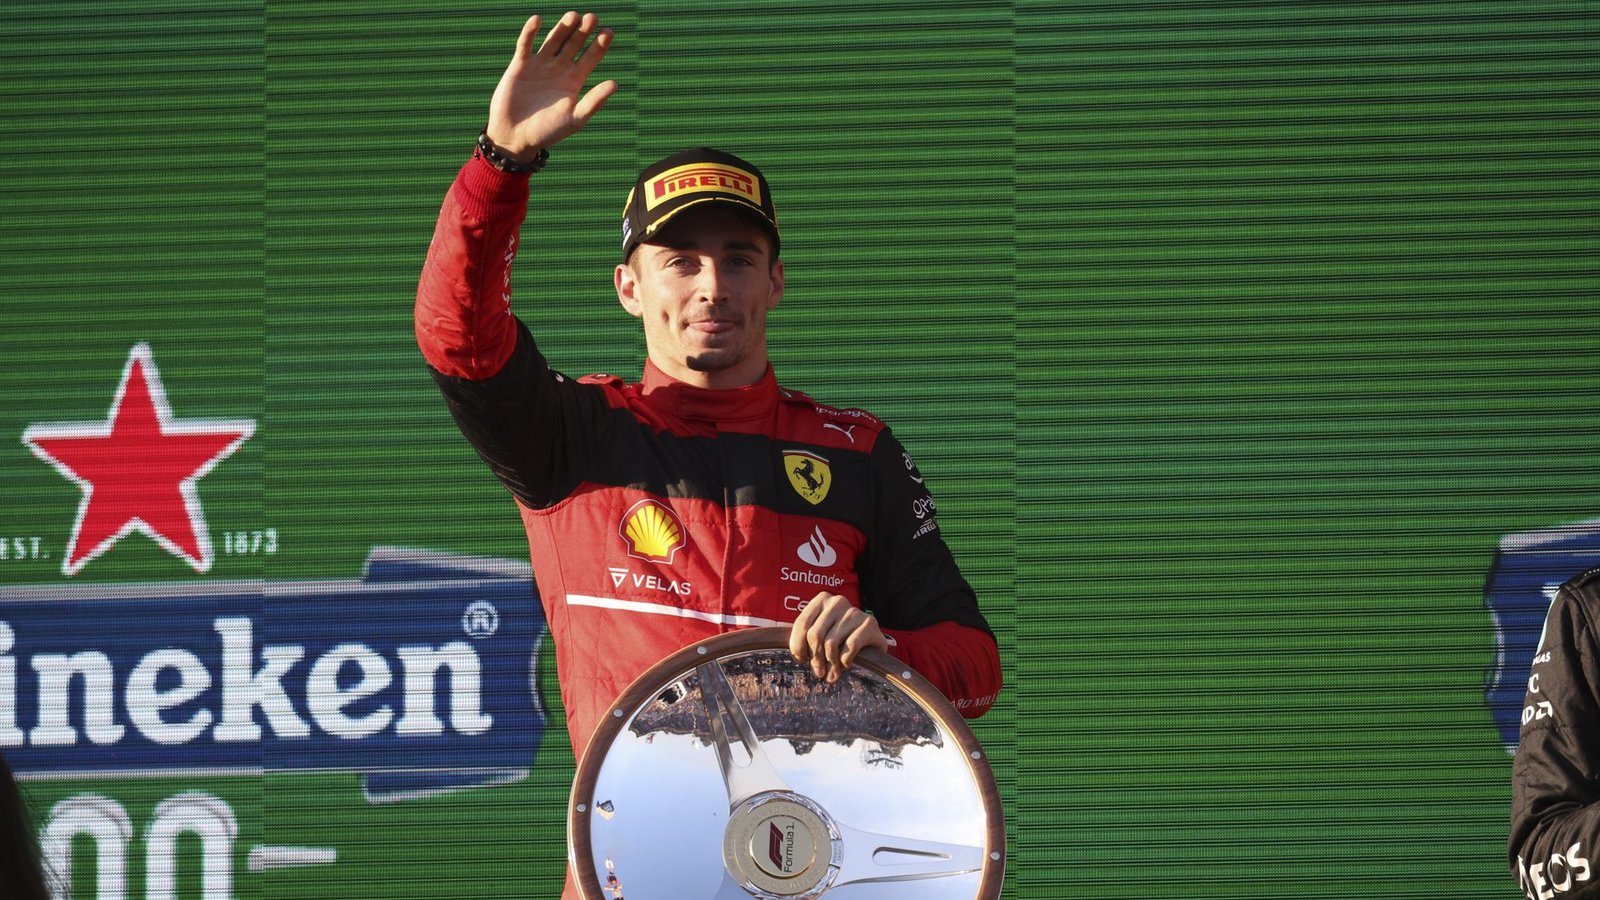 Charles Leclerc gewann beim Grand Prix in Australien – und die Ferraristi erwarten nun, dass er  am Sonntag auch für einen Heimsieg in Imola sorgt.Foto: dpa/Asanka Brendon Ratnayake